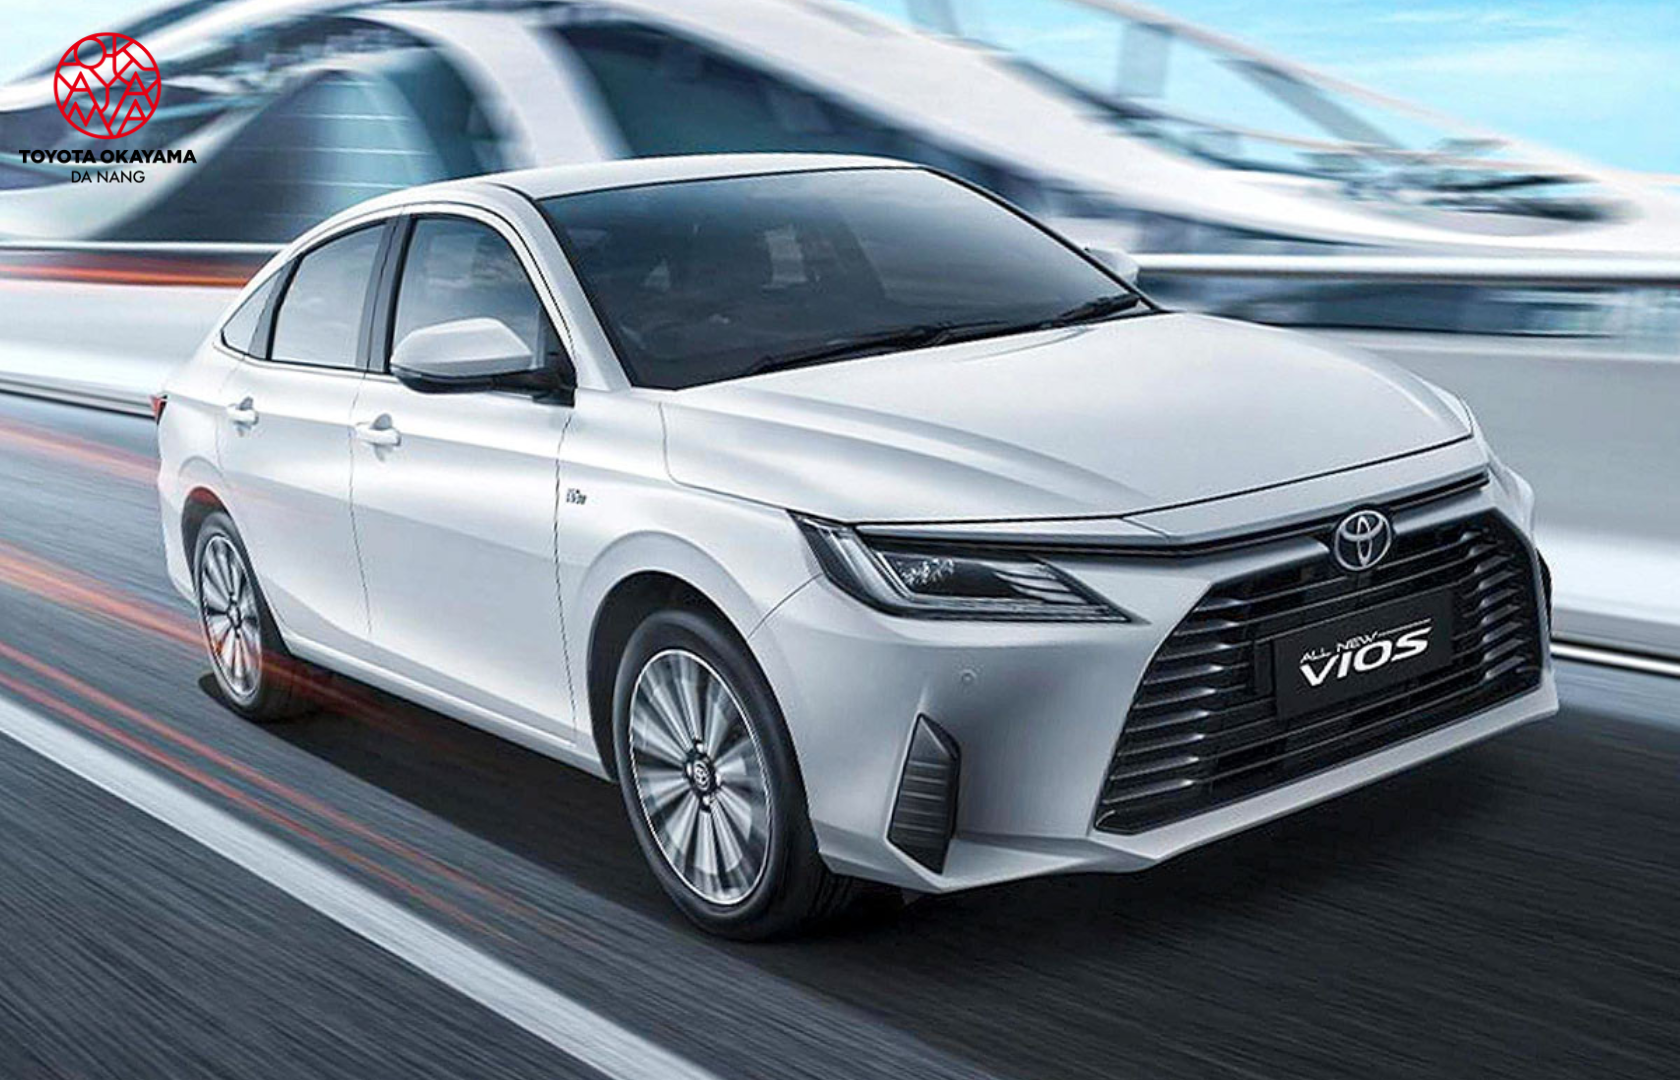 Toyota Vios - chiếc xe sedan cỡ nhỏ ấn tượng và tiết kiệm nhiên liệu tại Toyota Phạm Hùng